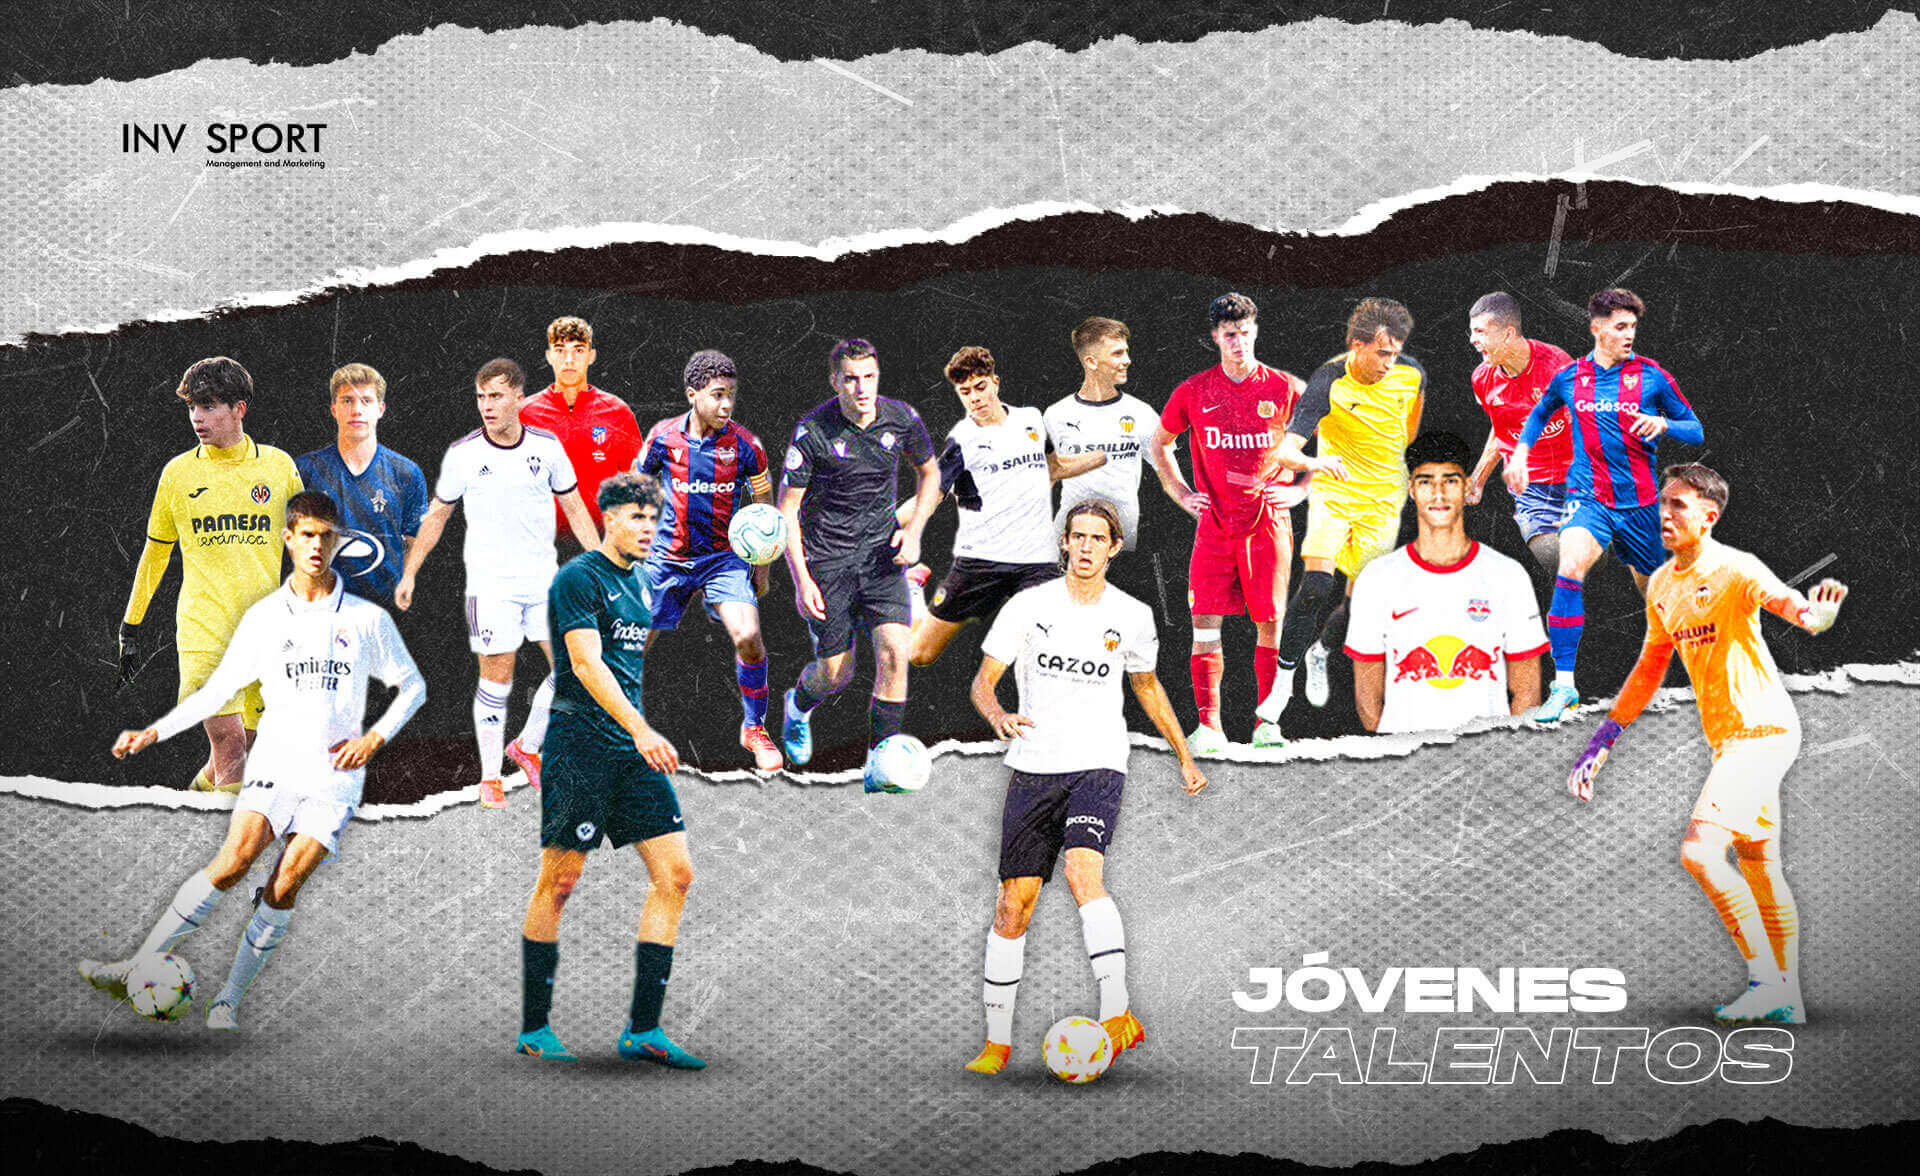 Mosaico con imágenes de jóvenes talentos de INVsport